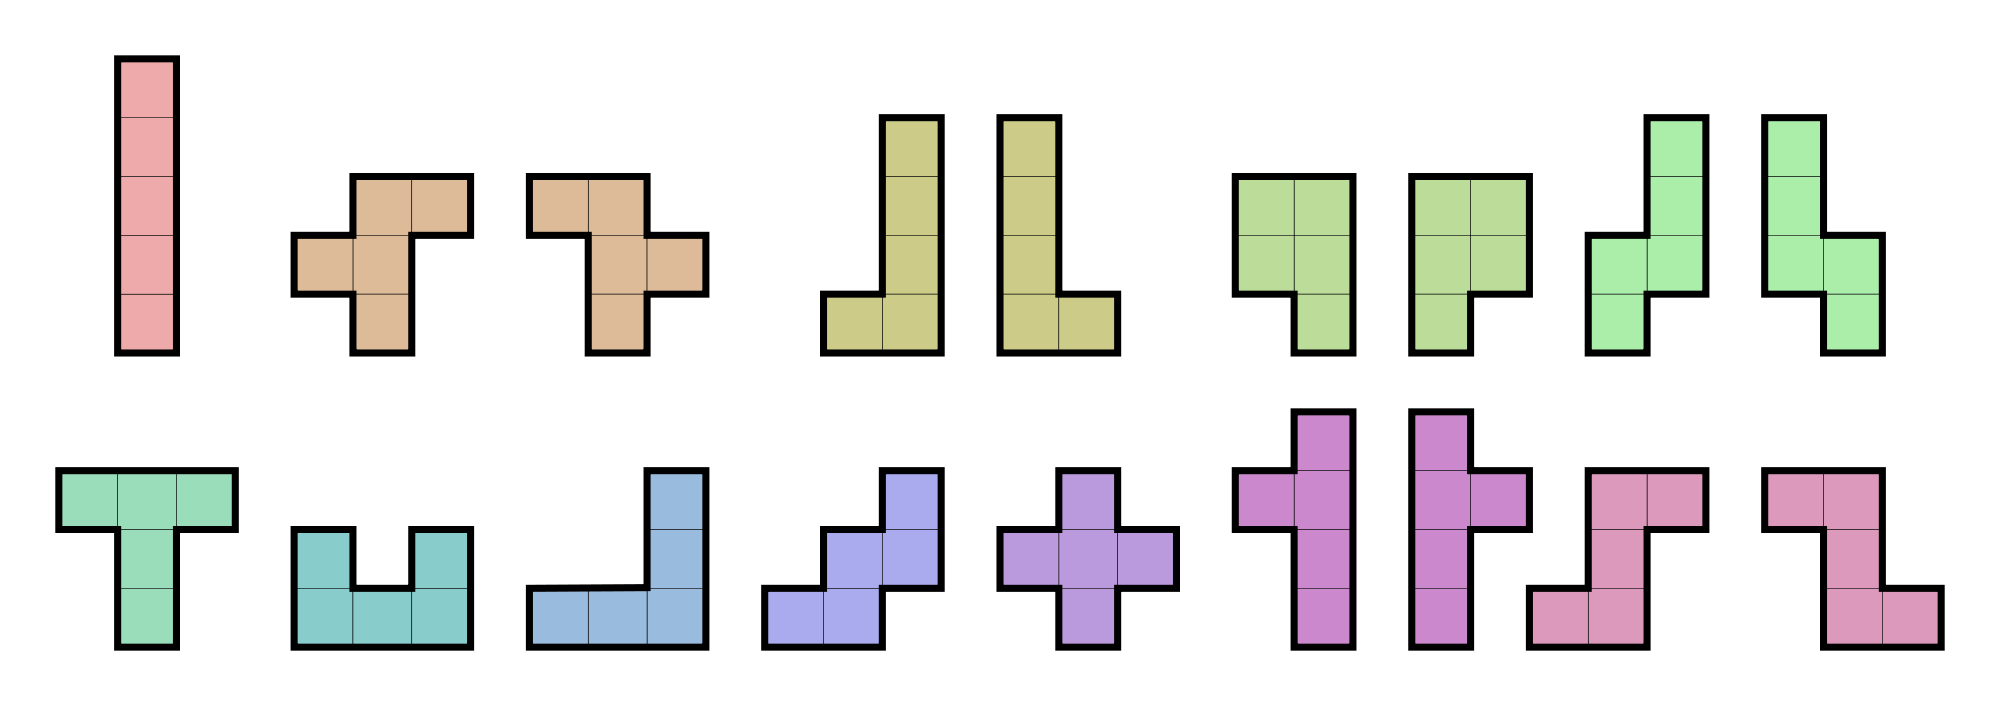 5-block Tetris pieces